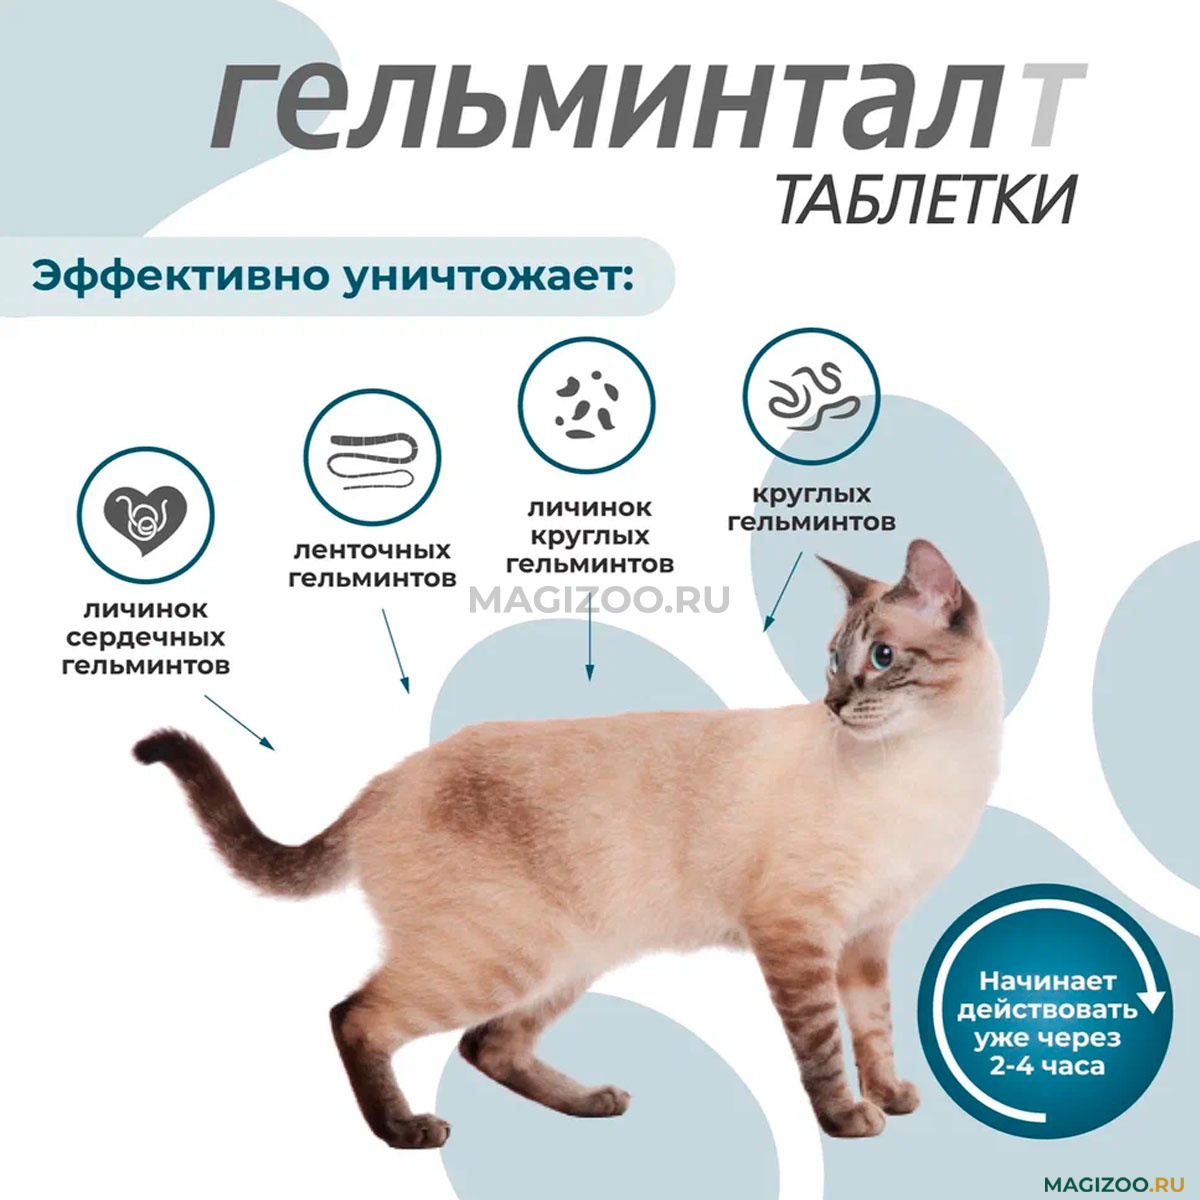 ГЕЛЬМИНТАЛ Т антигельминтик для котят и взрослых кошек весом до 4 кг уп. 2  таблетки (1 уп) купить в интернет-магазине по цене от 282 ₽, доставка по  Москве